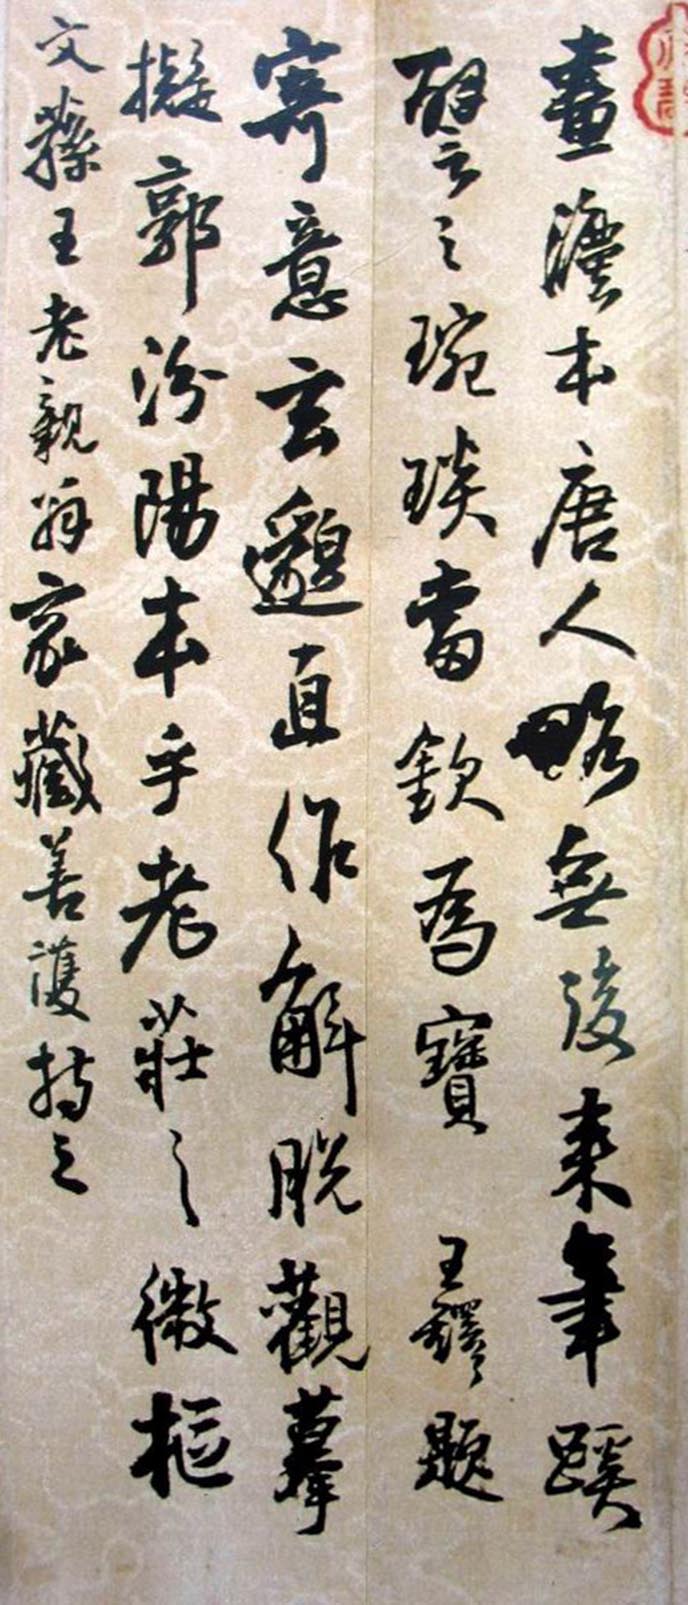 王铎《跋韩熙载夜宴图》-北京故宫博物院藏(图1)